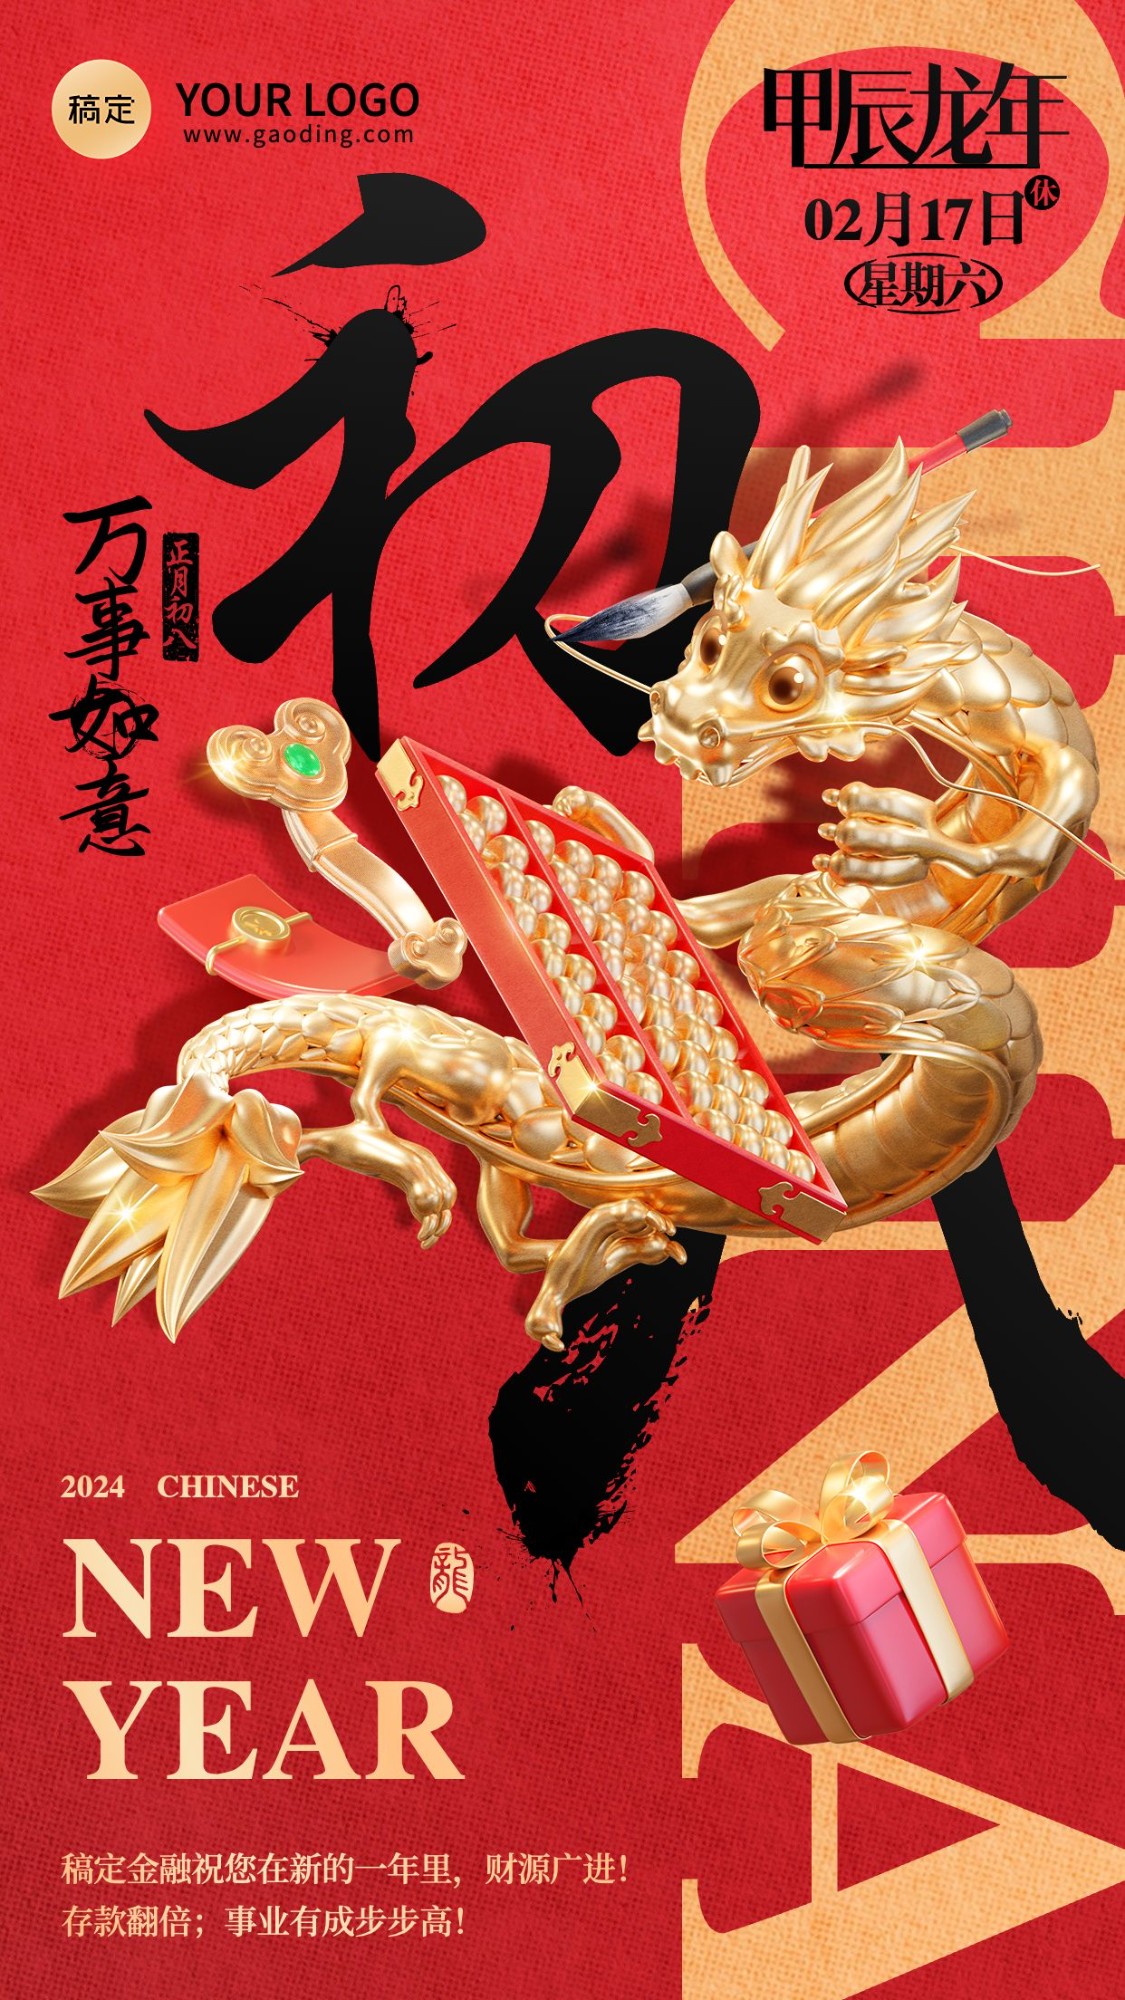 龙年春节正月初八金融保险节日祝福问候3D喜庆大字手机海报套系